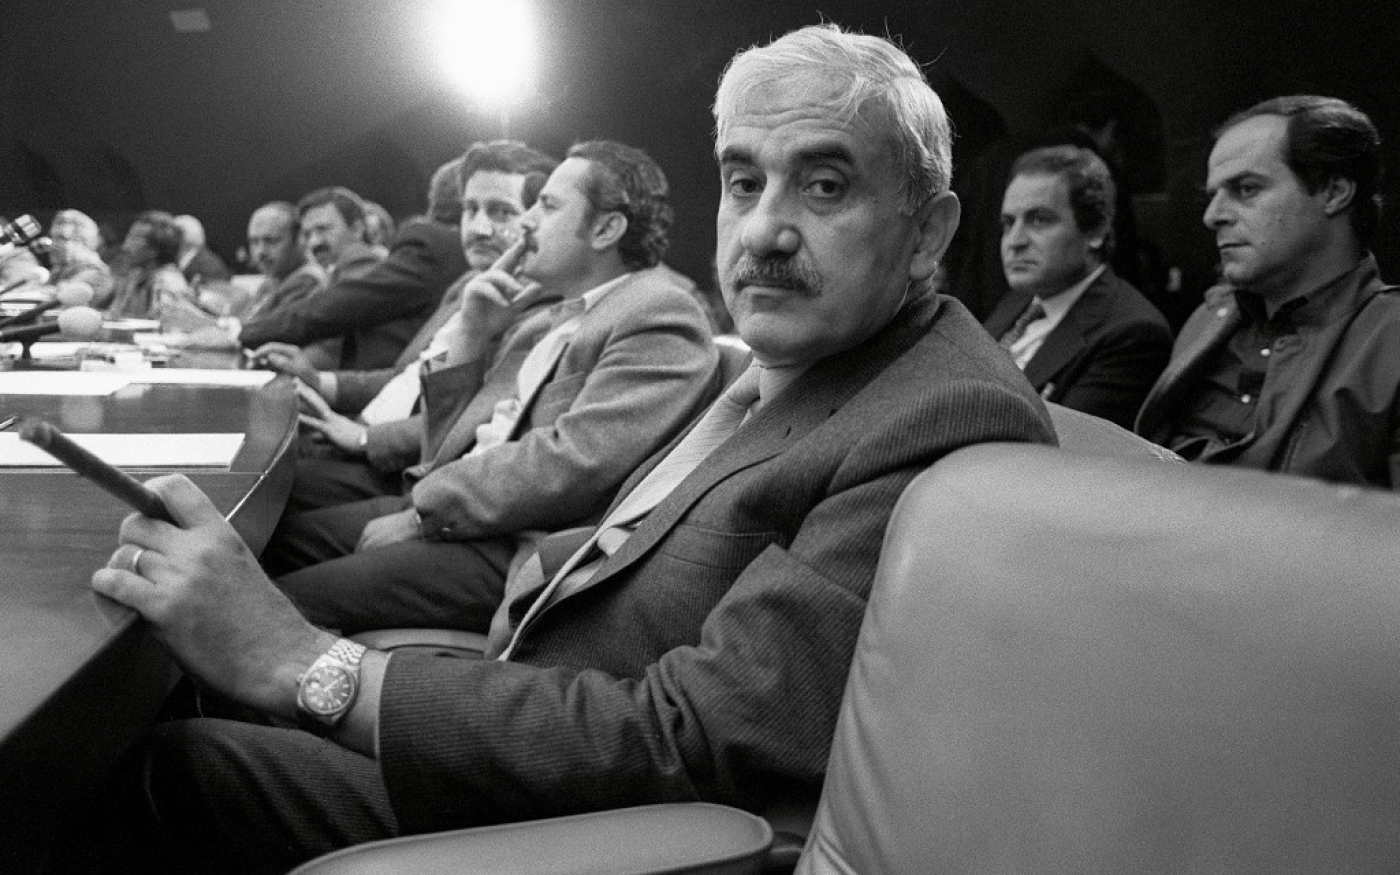 Georges Habache, chef du FPLP, dans une réunion du Conseil national palestinien pour décider s’il faut reconnaître Israël, le 12 novembre 1988 à Alger (AFP)